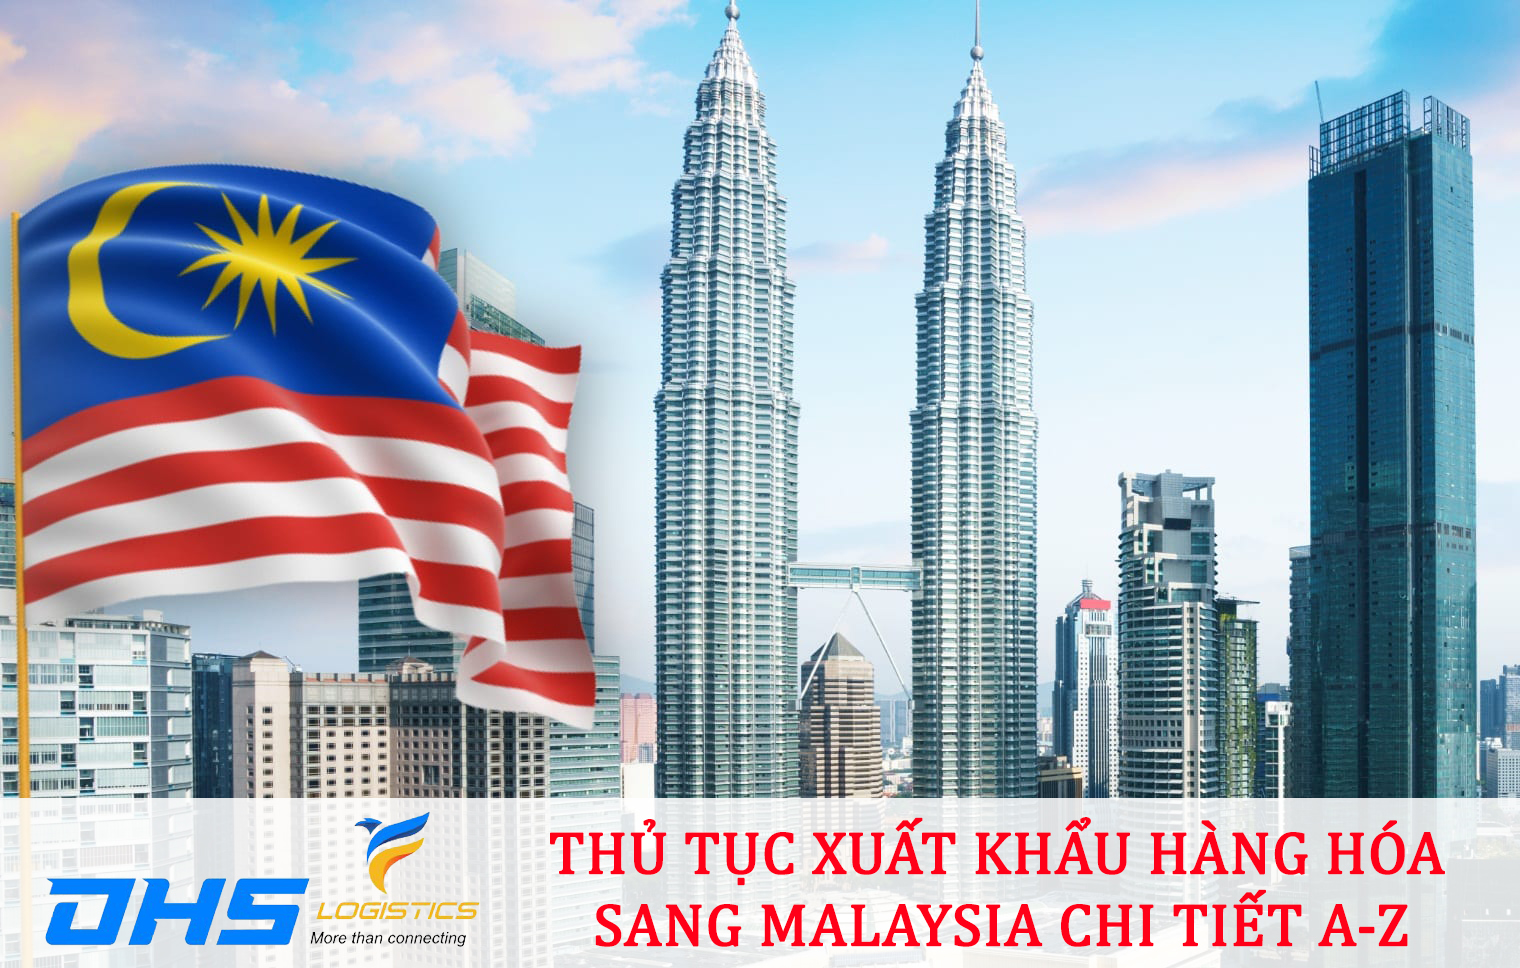 Thủ tục xuất khẩu hàng hóa sang Malaysia